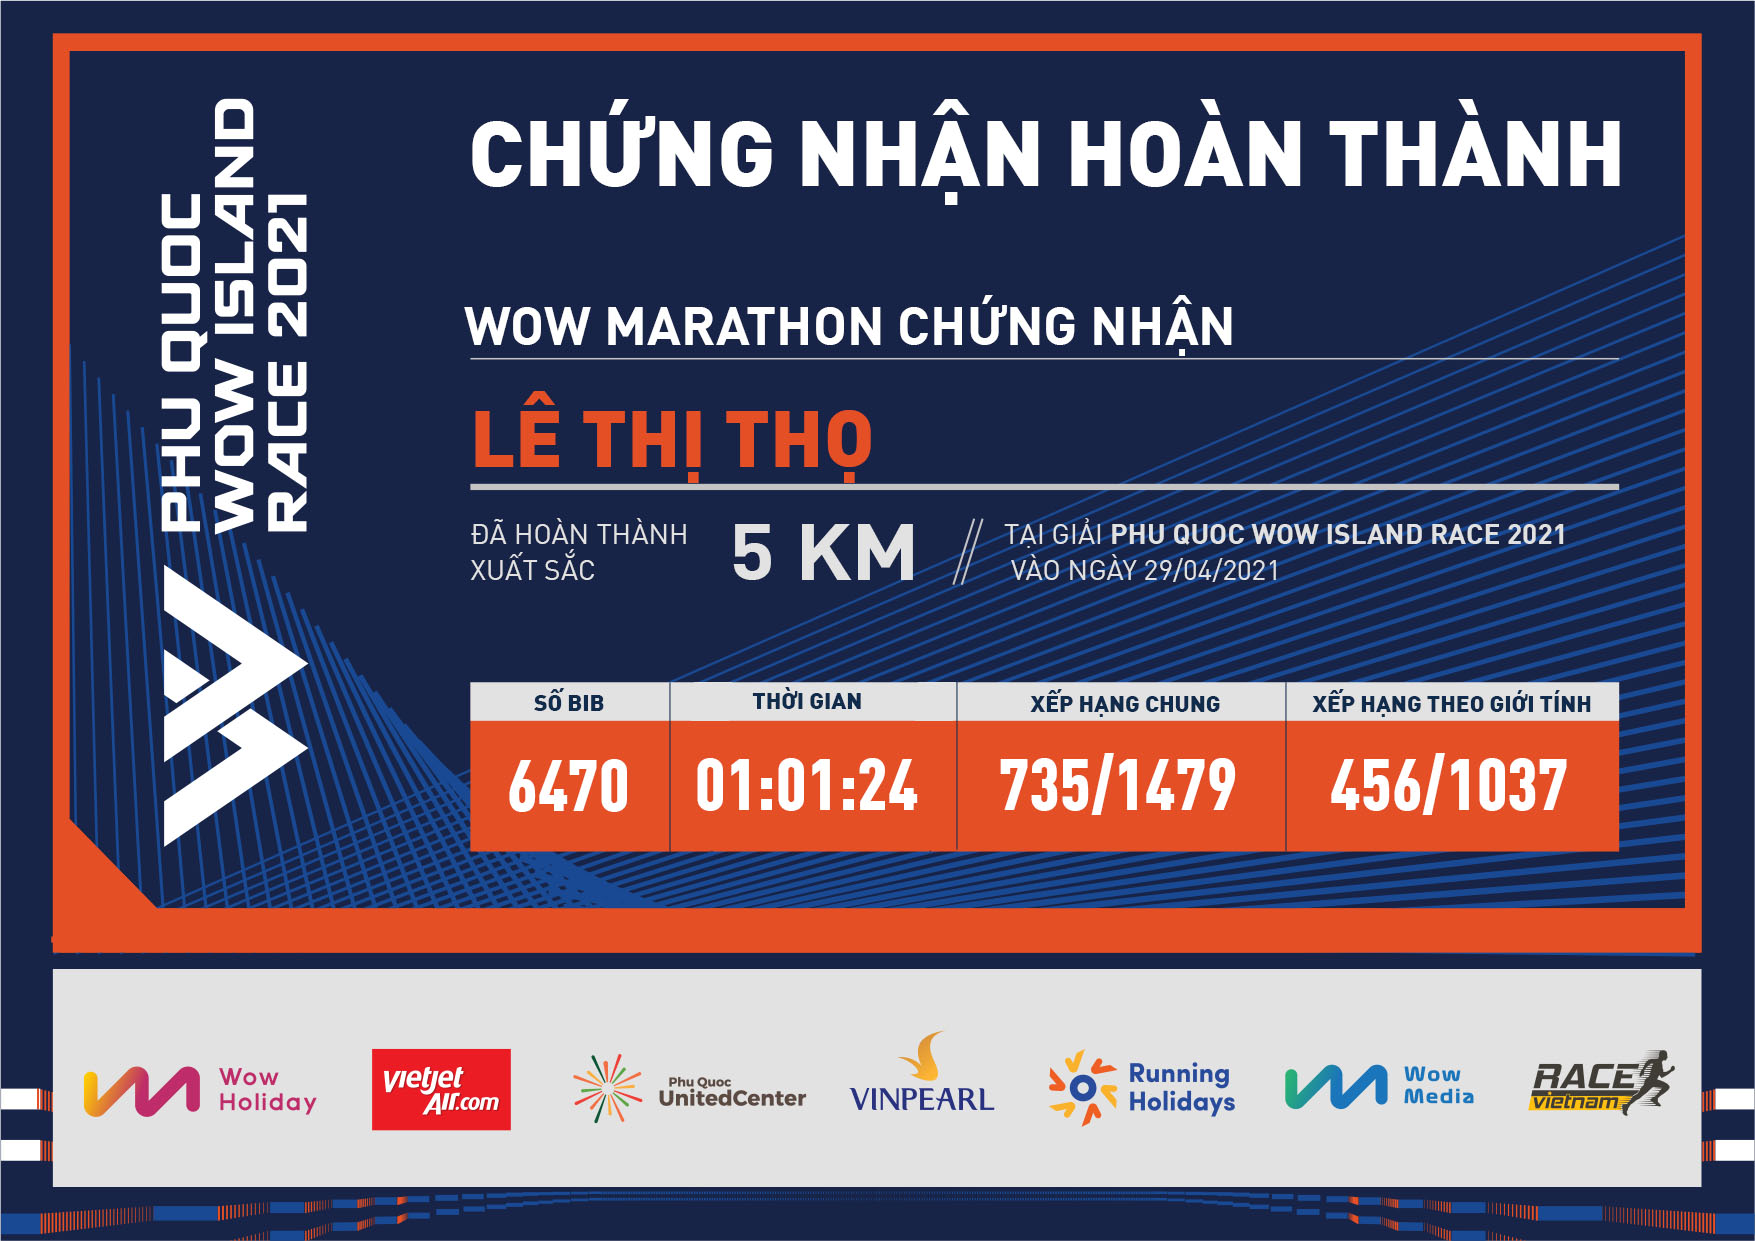 6470 - Lê Thị Thọ